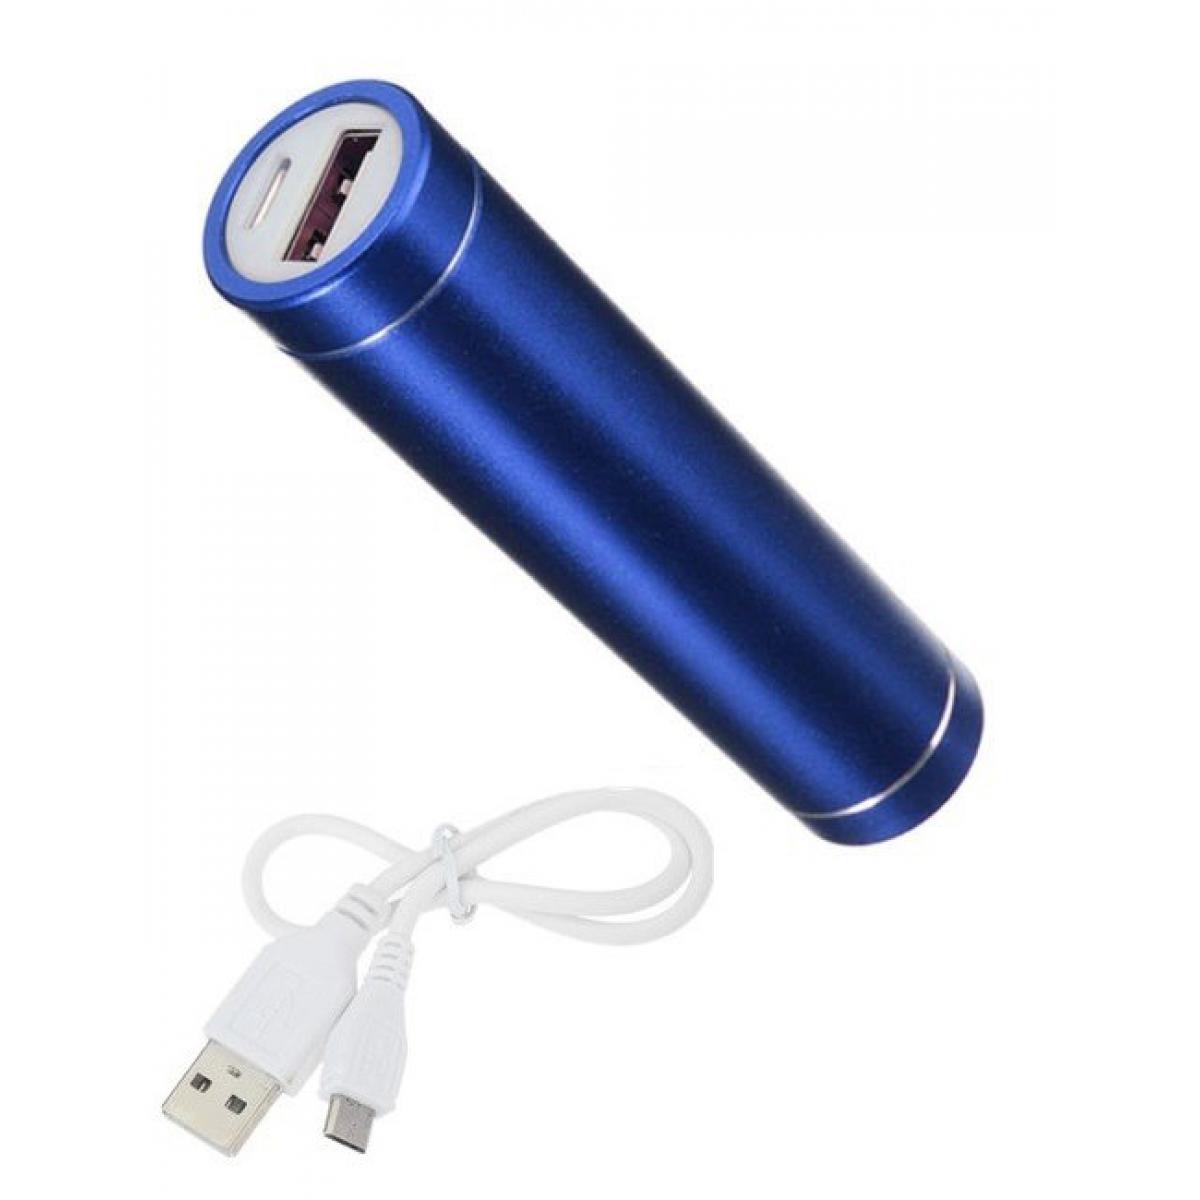 Shot - Batterie Chargeur Externe pour SONY Xperia 10 Power Bank 2600mAh avec Cable USB/Mirco USB Secours Telephone (BLEU) - Chargeur secteur téléphone